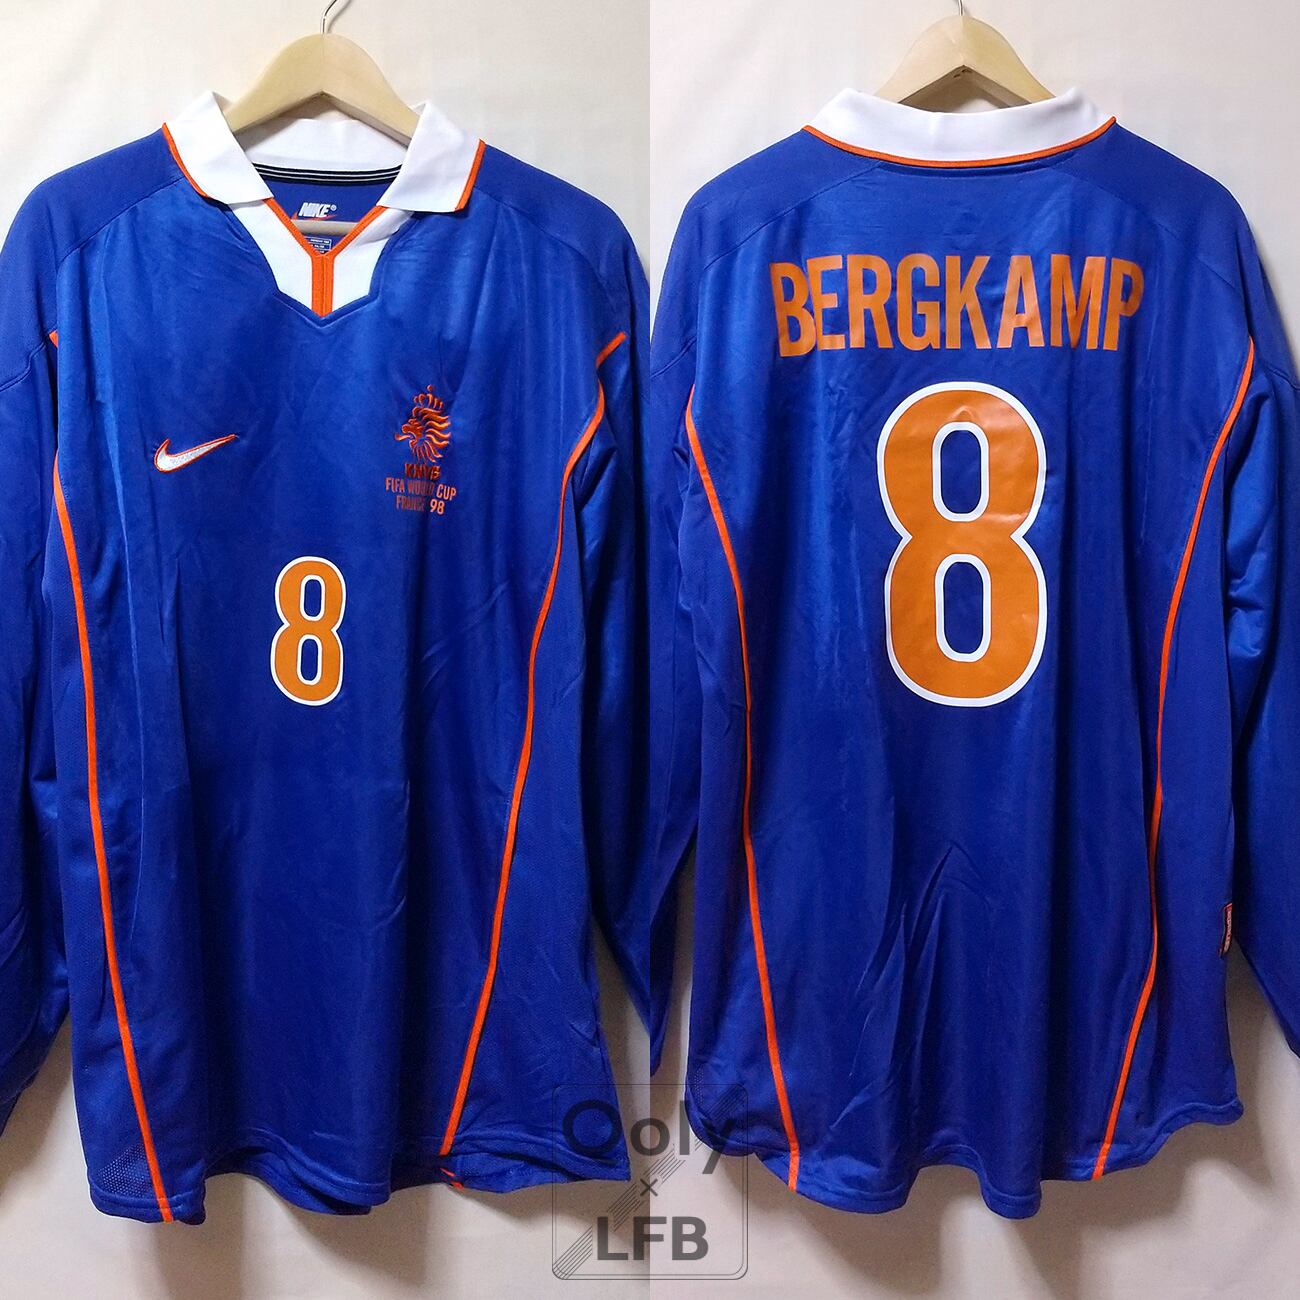 オランダ代表1998W杯 Hレプリカユニフォーム #8ベルカンプ サイン入り